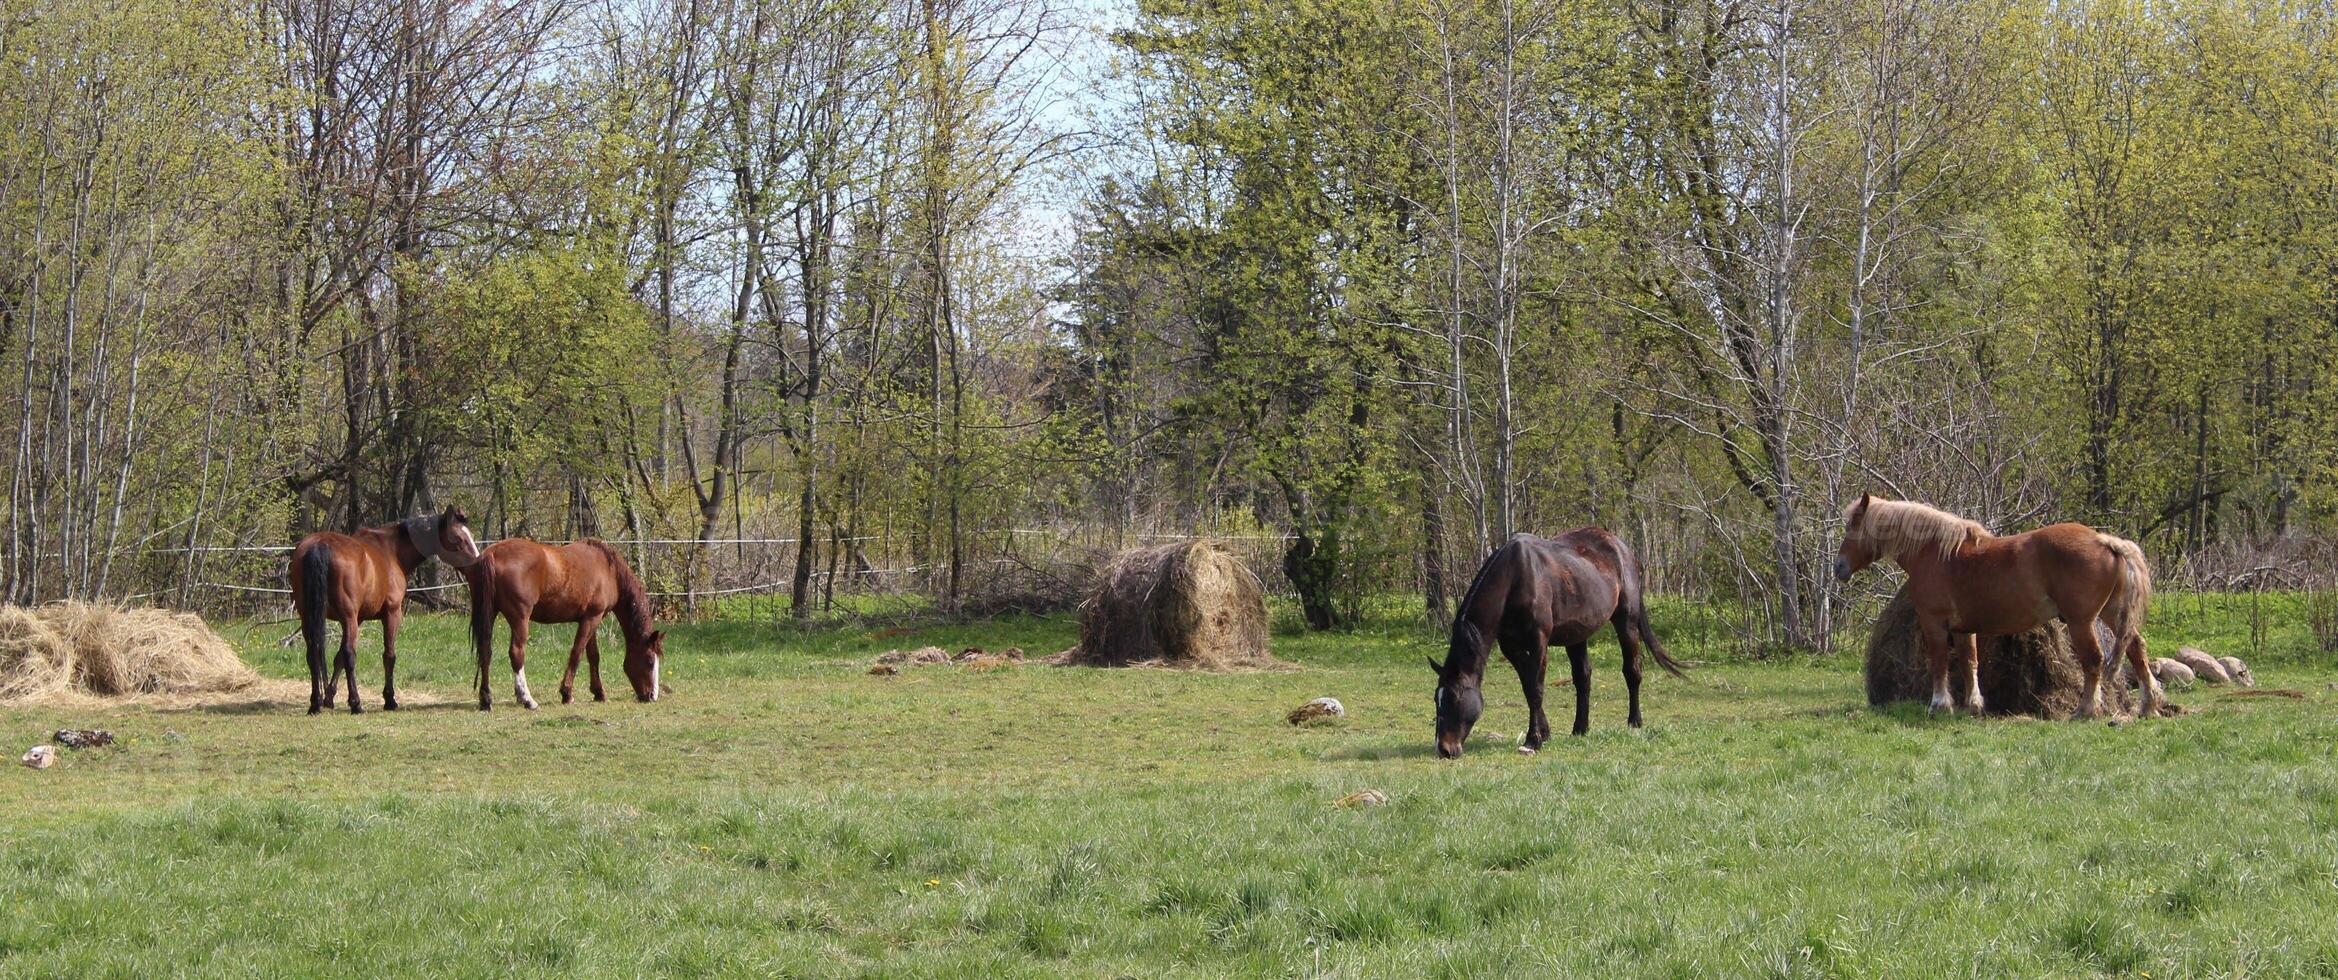 prachtig evenwichtig tafereel van paarden begrazing in zomer. foto